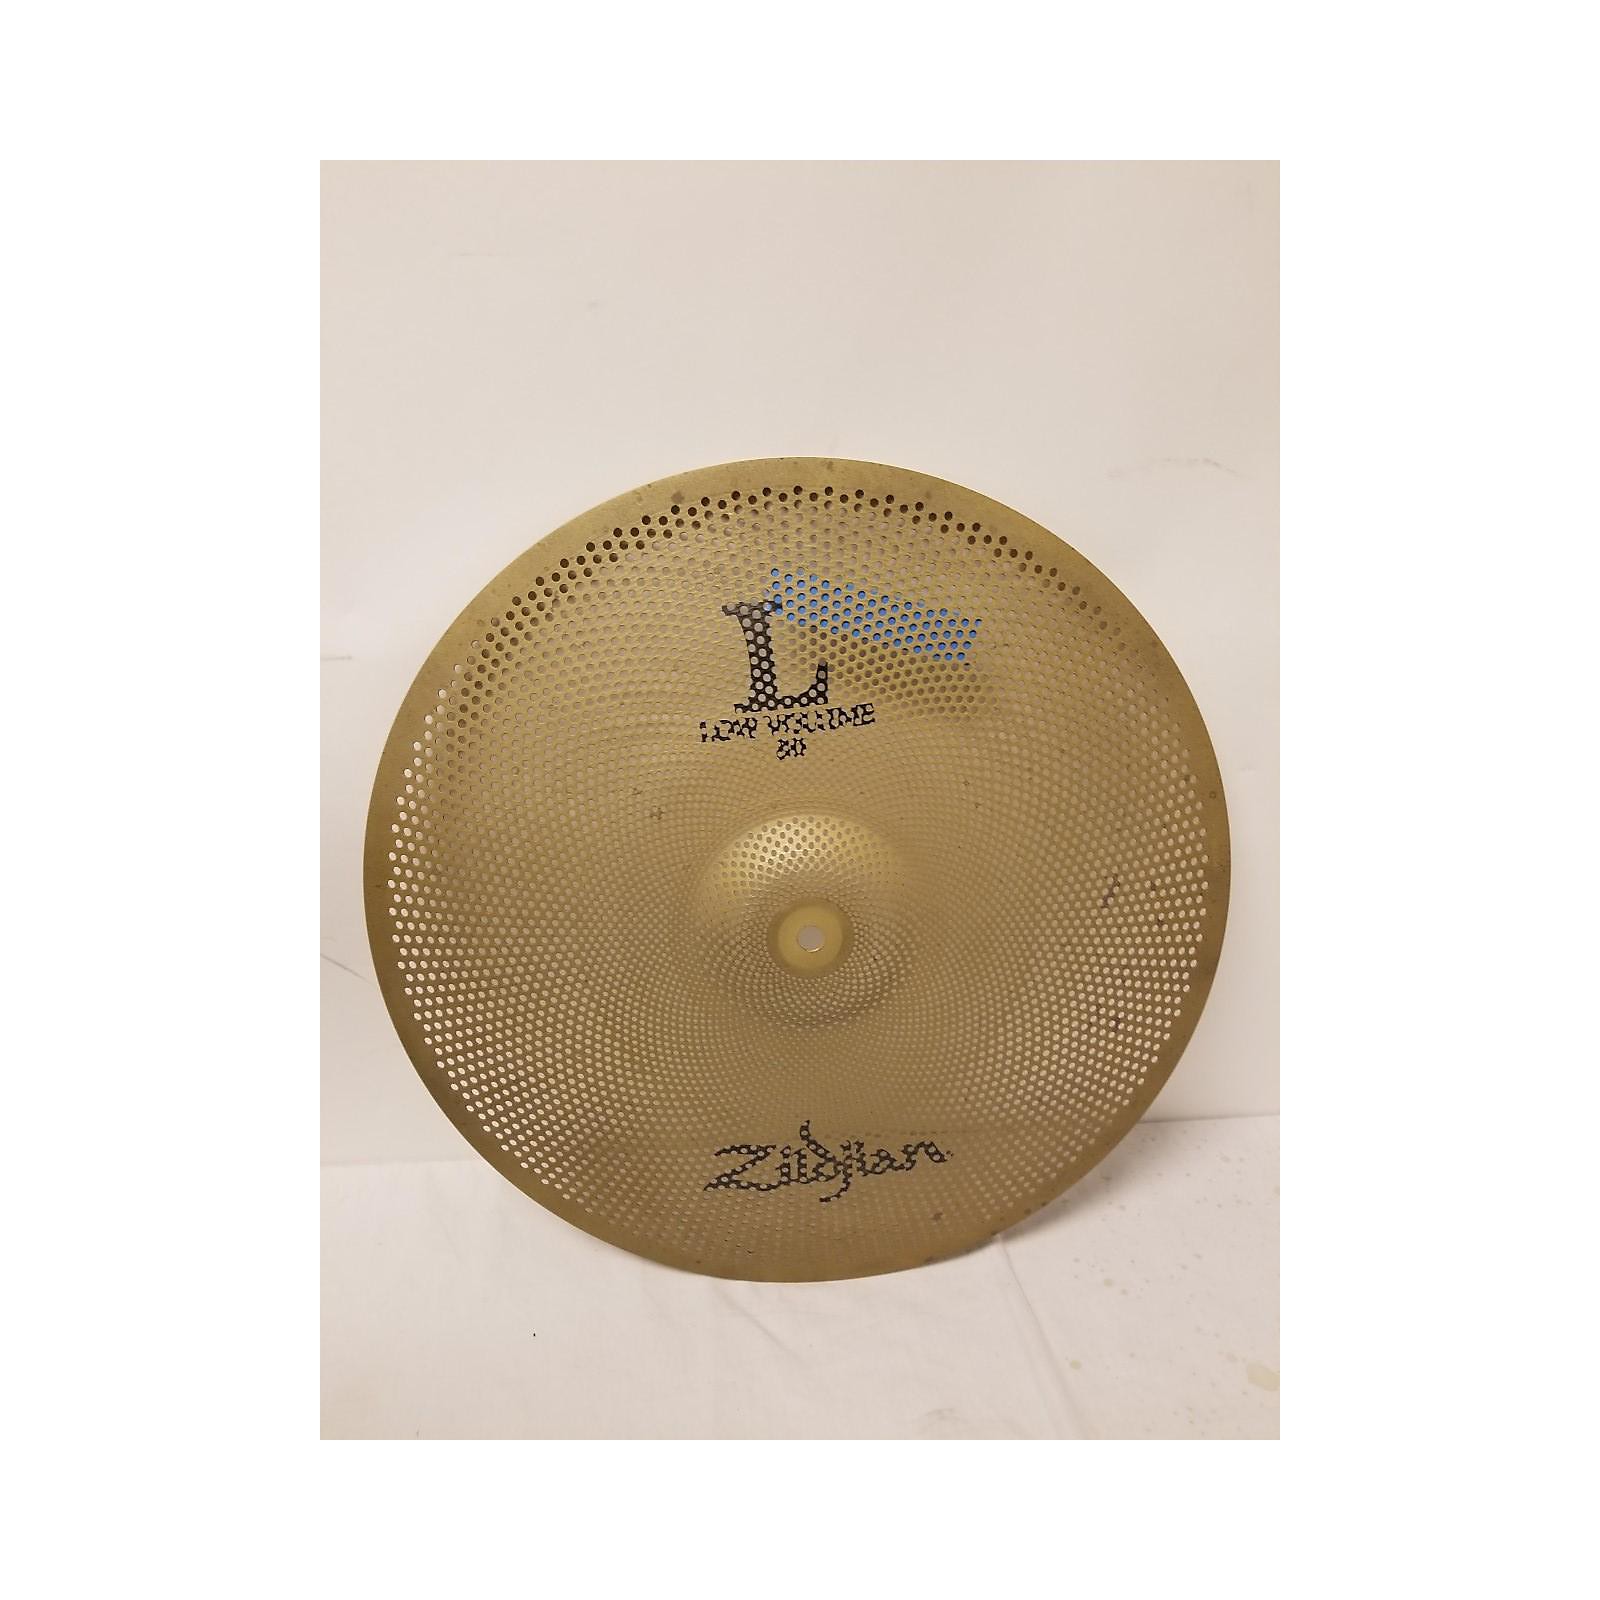 Used Zildjian 18in L80 Low Volume Ride Cymbal 38 | Musician's Friend